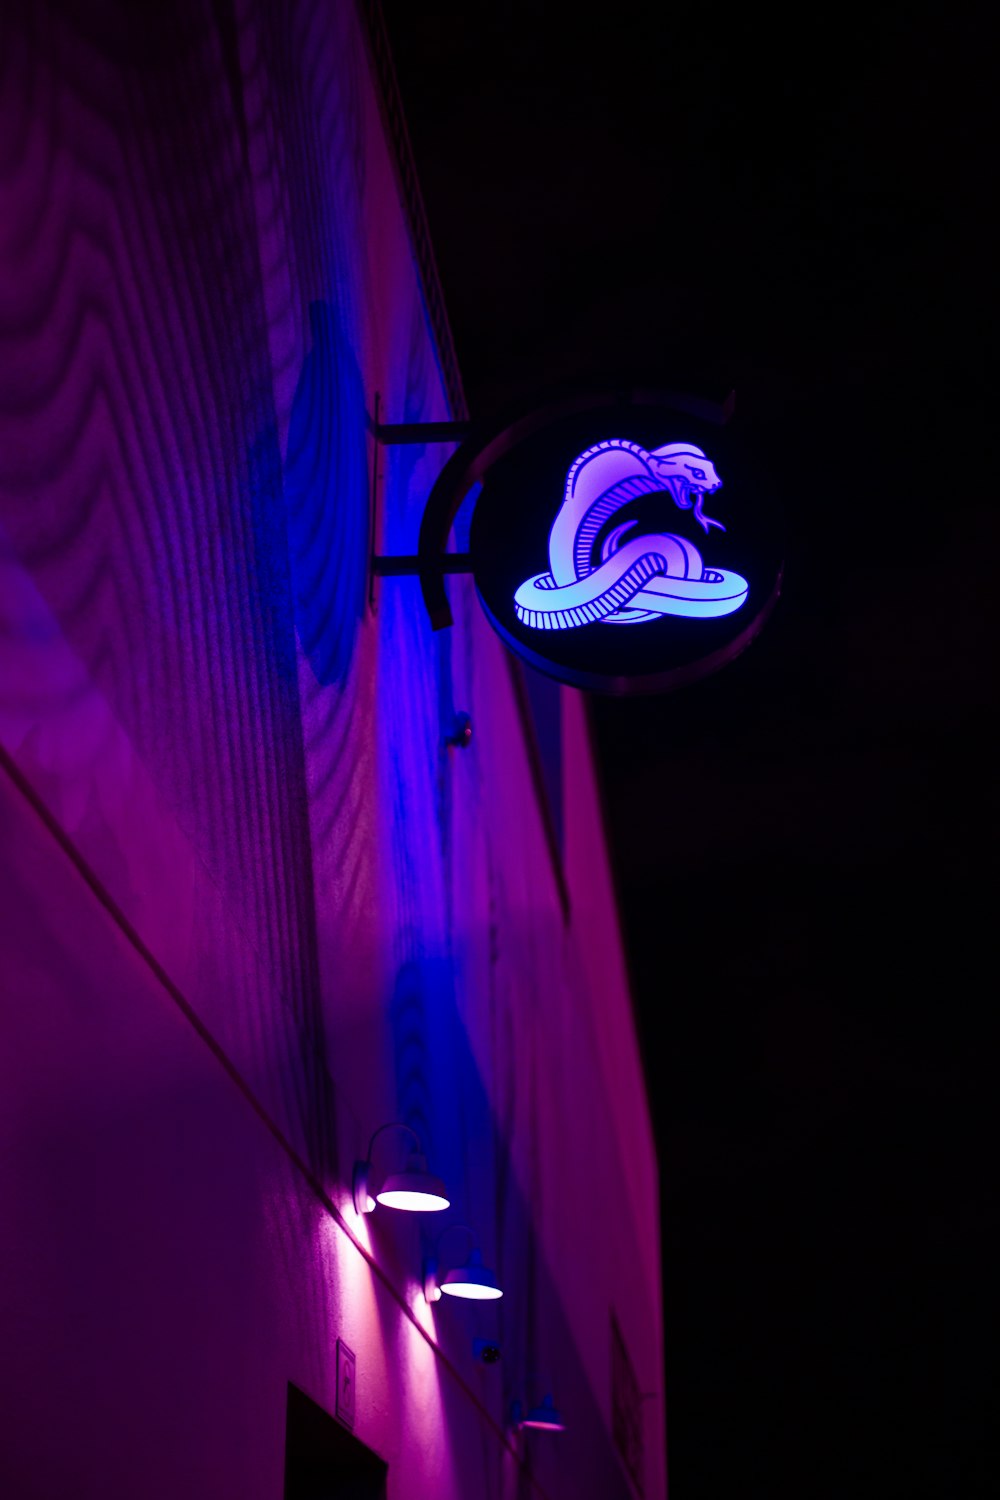 bombilla de luz púrpura encendida durante la noche